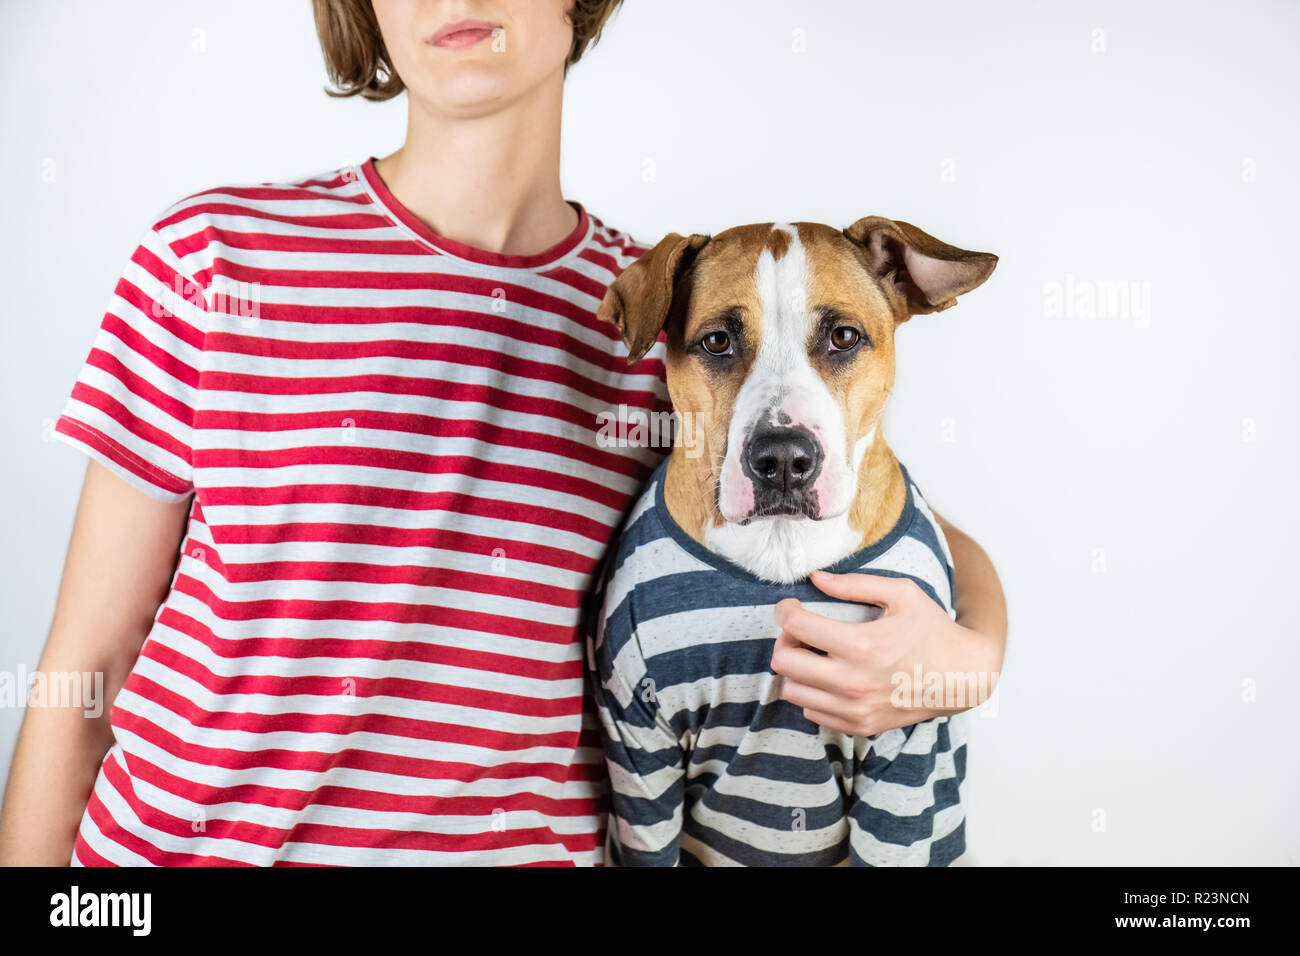 Le chien et le propriétaire dans les vêtements semblables. Staffordshire Terrier et les droits de l'habillé en même t-shirts en arrière-plan studio Banque D'Images